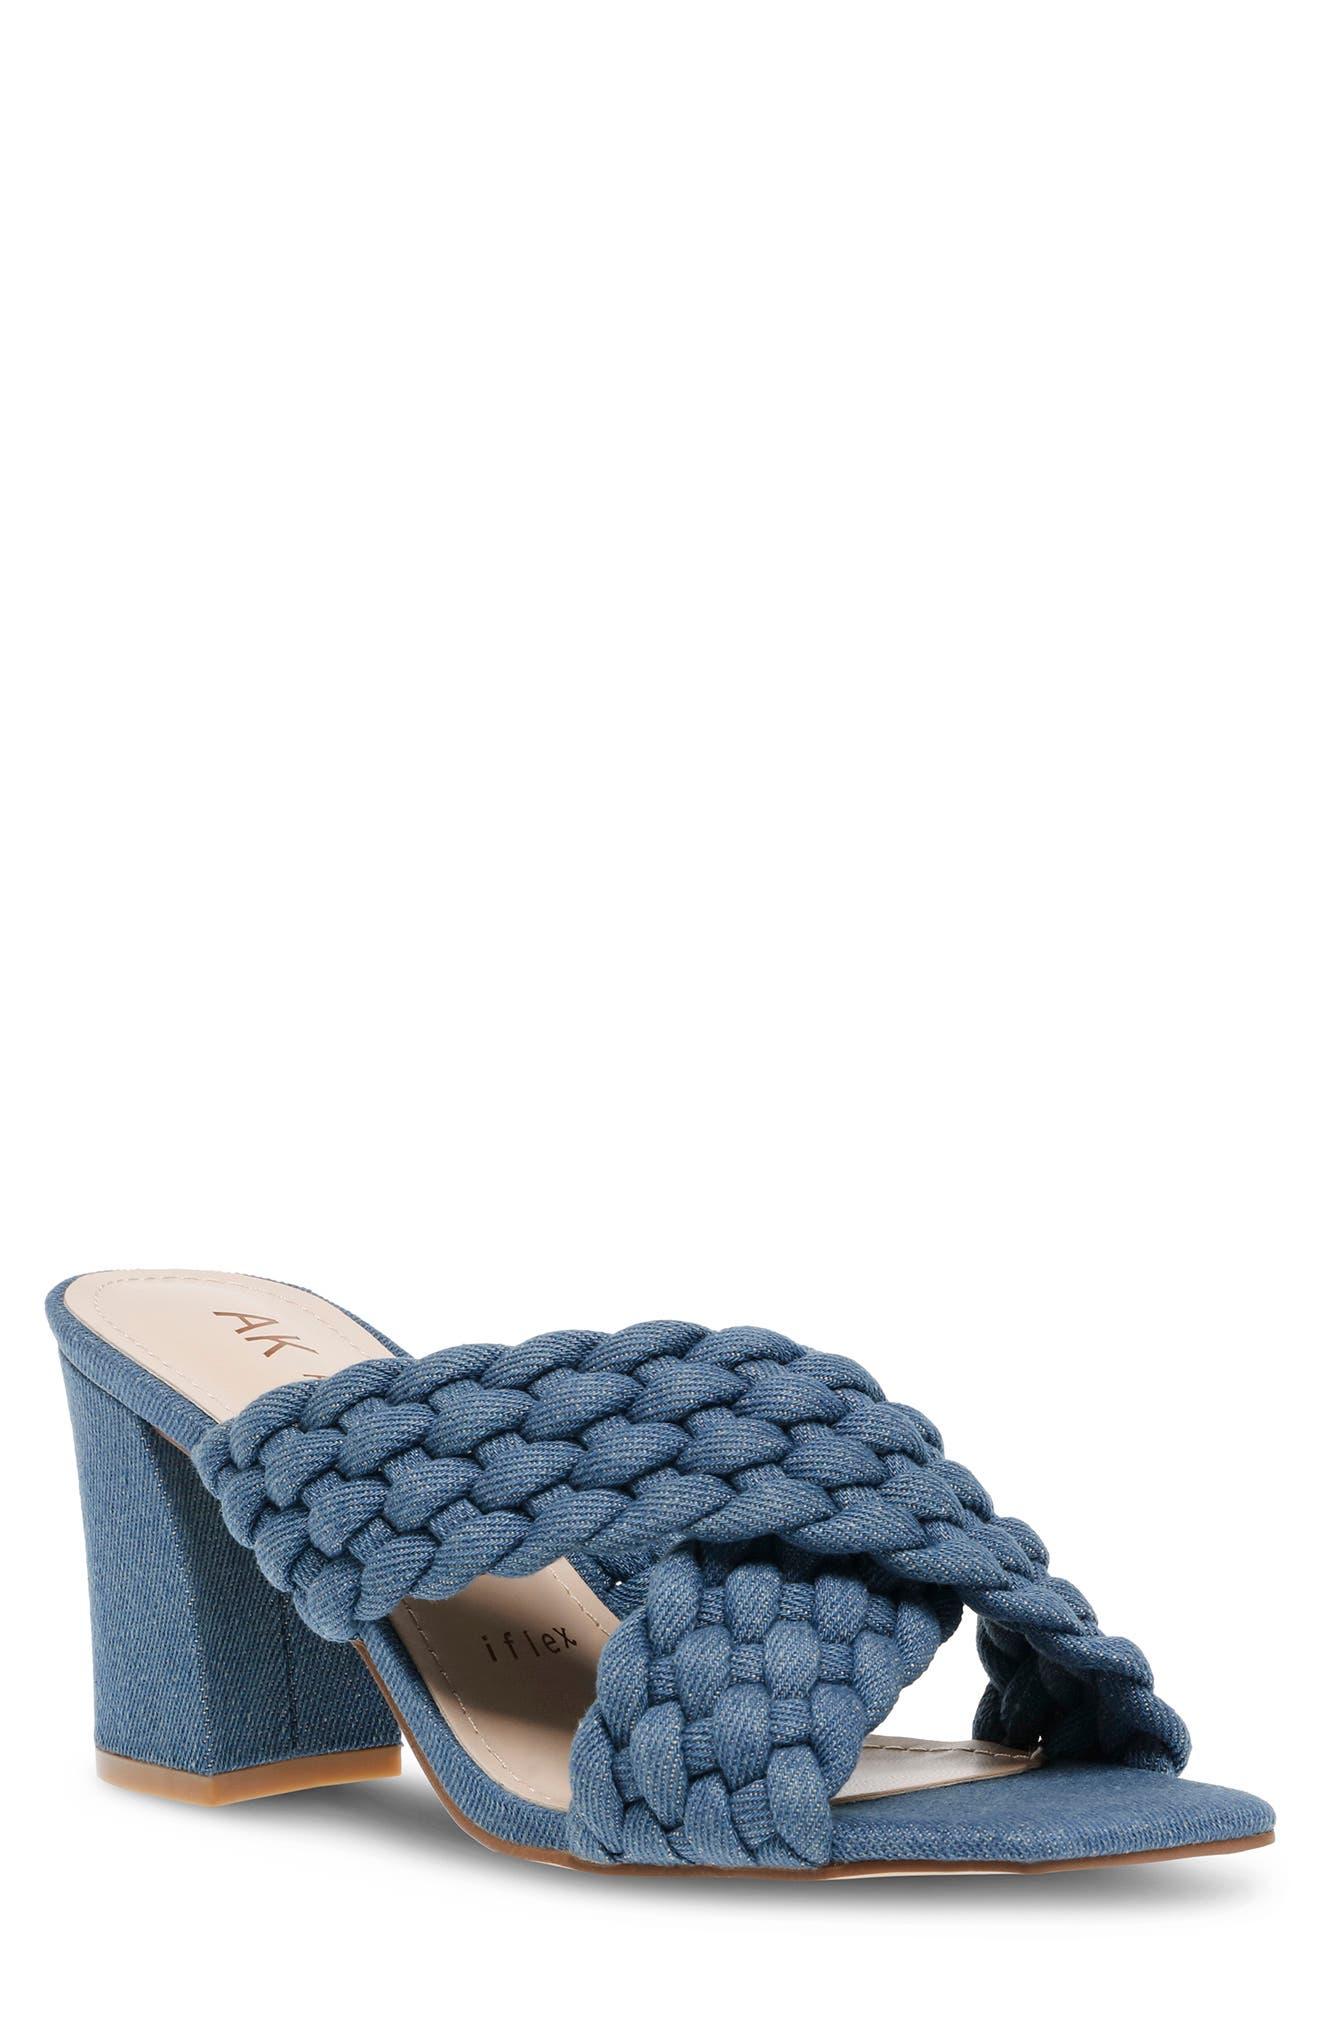 Anne Klein Misty Crisscross Sandal In Denim At Nordstrom Rack in Blue | Lyst